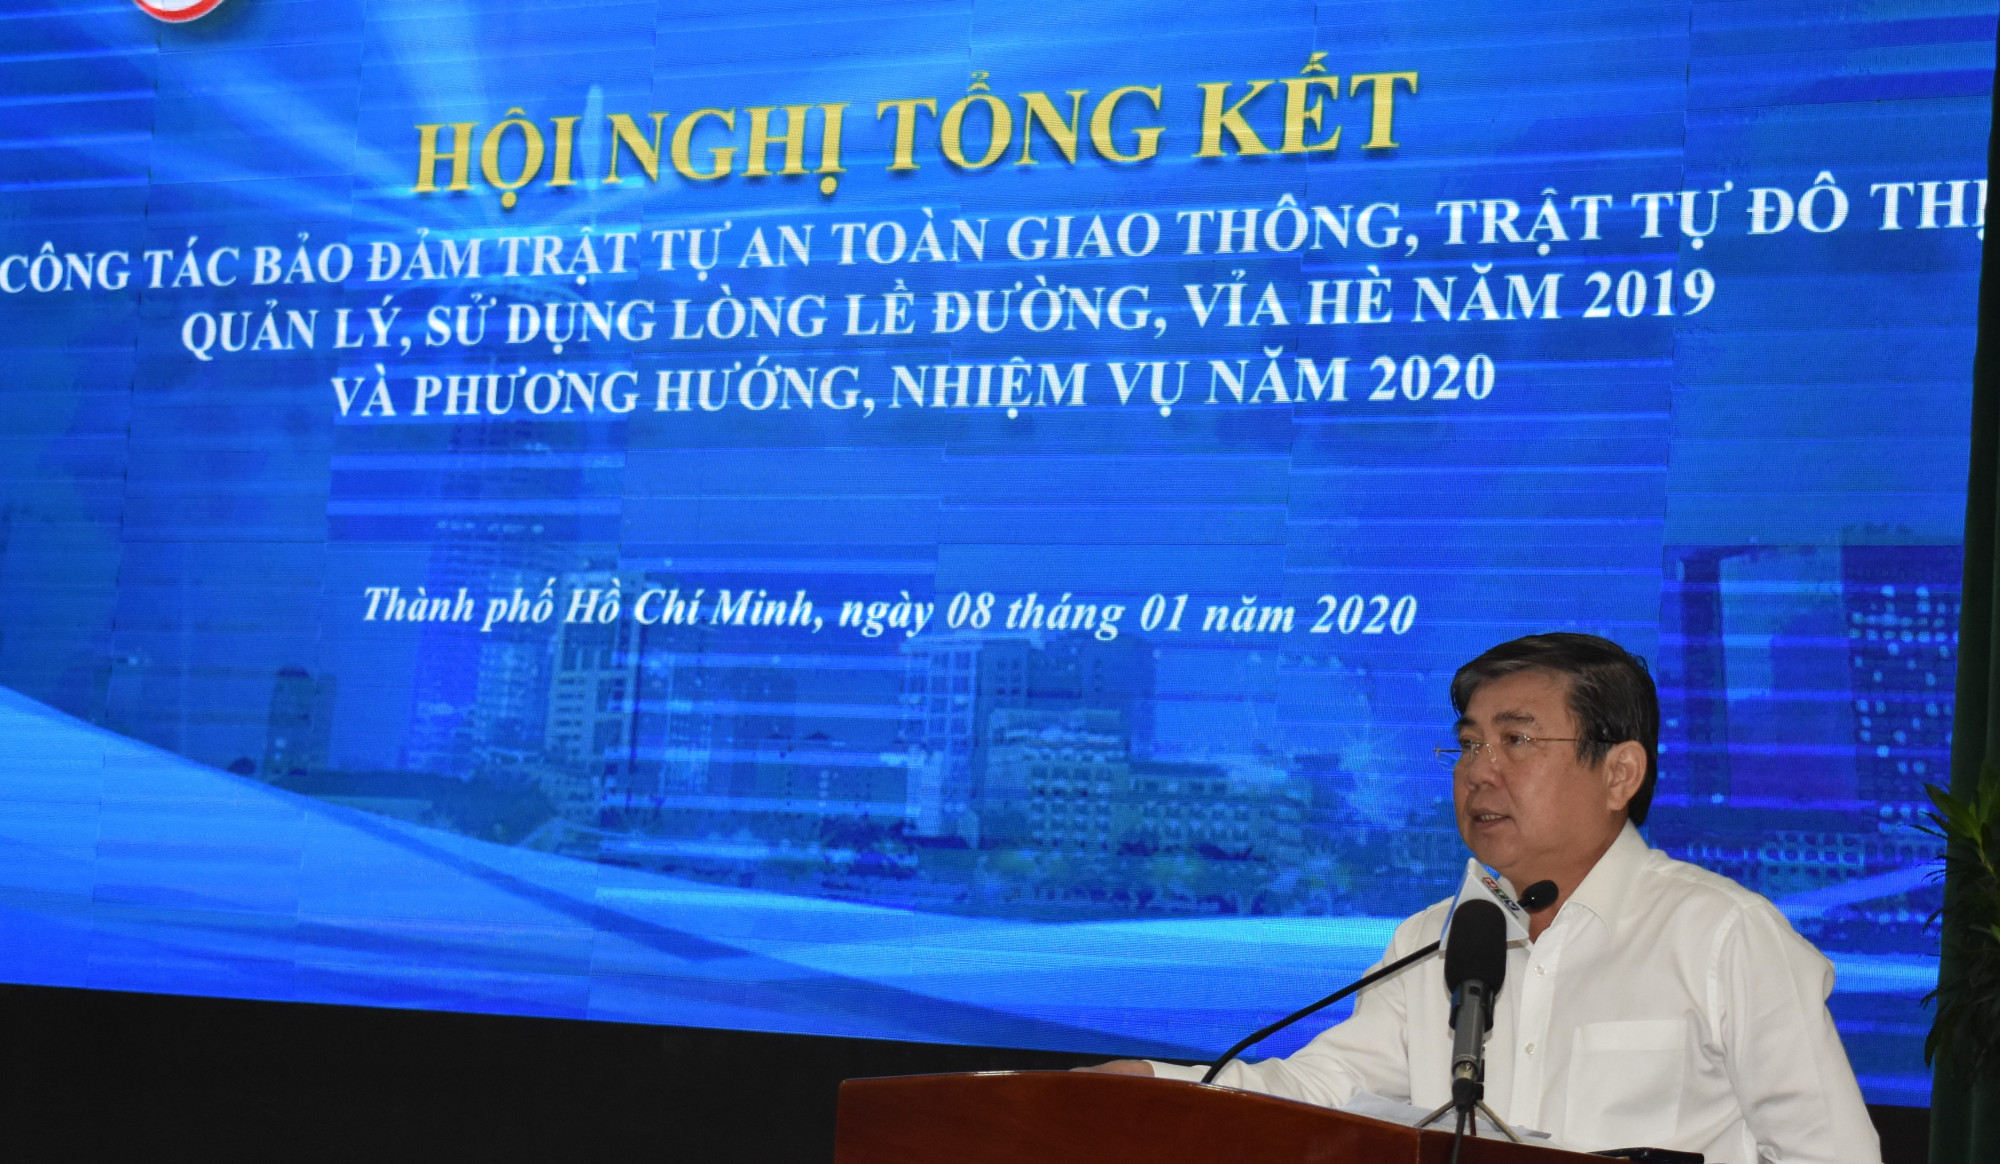 Chủ tịch UBND TPHCM Nguyễn Thành Phong yêu cầu ông Trần Quang Thảo